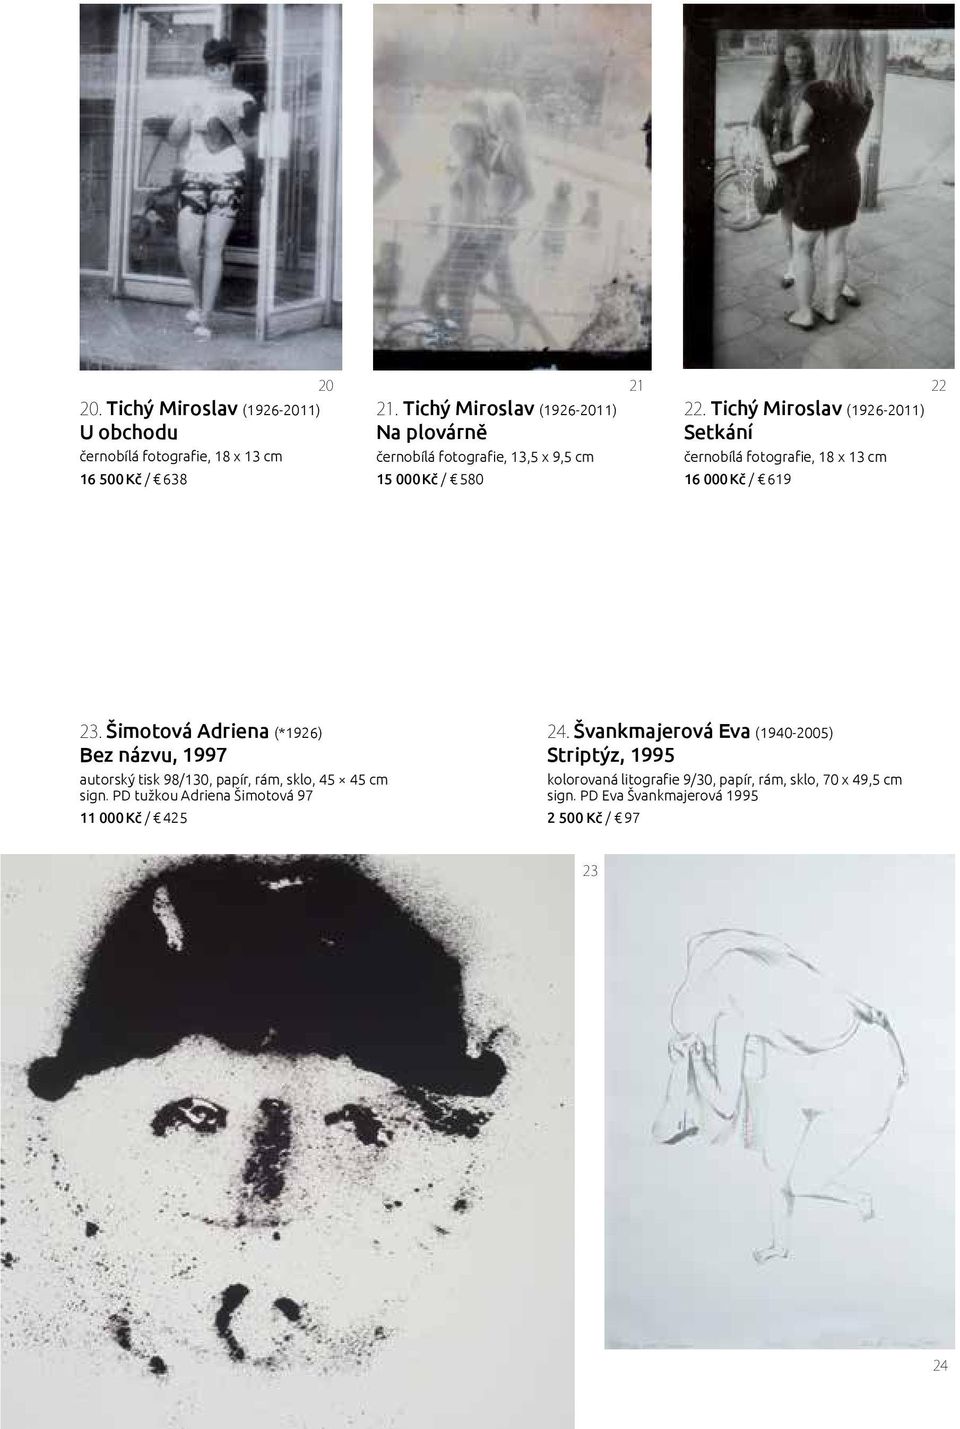 Tichý Miroslav (1926-2011) Setkání černobílá fotografie, 18 x 13 cm 16 000 Kč / 619 23.